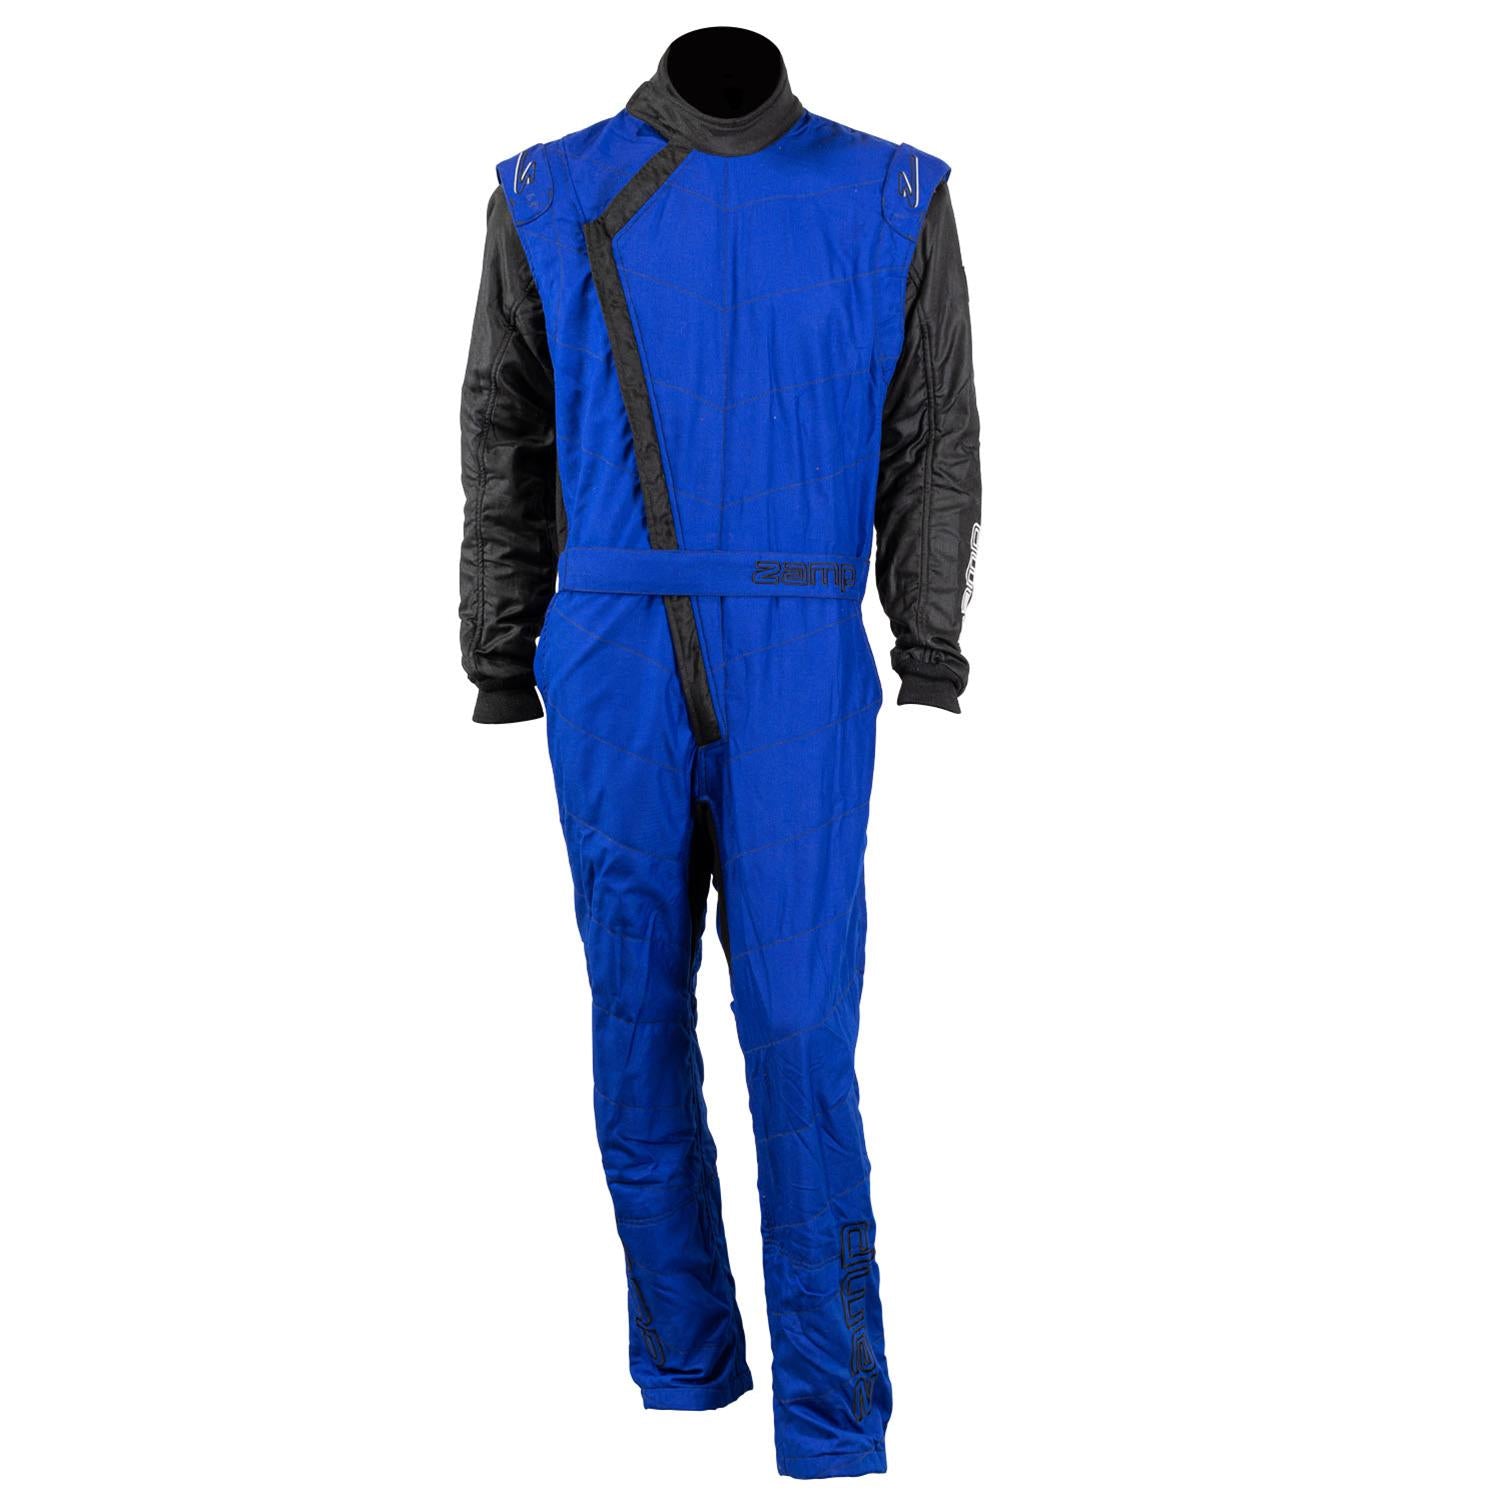 ZAMP Racing ZR-40 Race Suit Blue R07C04XL